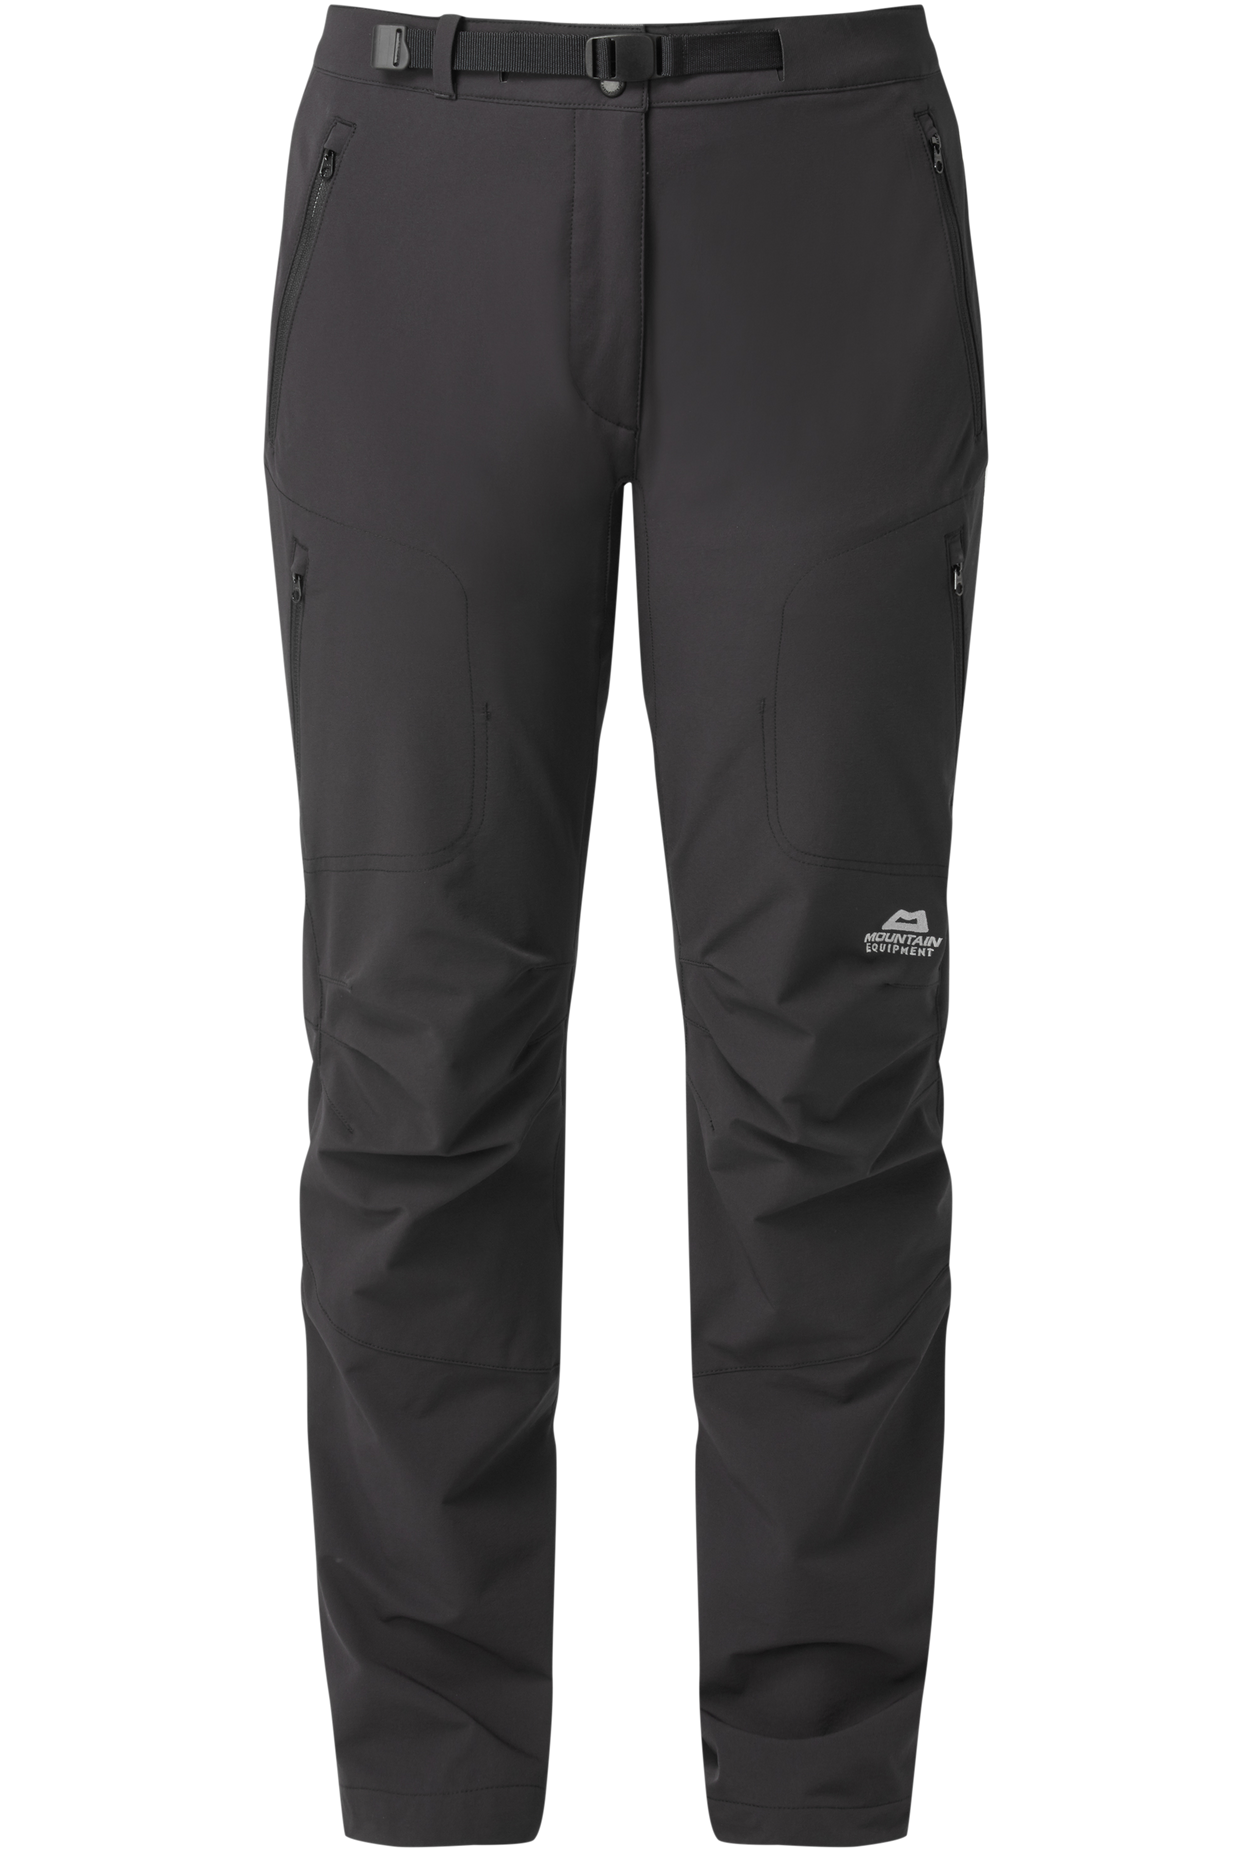 Mountain Equipment dámské softshellové kalhoty Chamois Wmns Pant - prodloužené Barva: black, Velikost: 16/XL